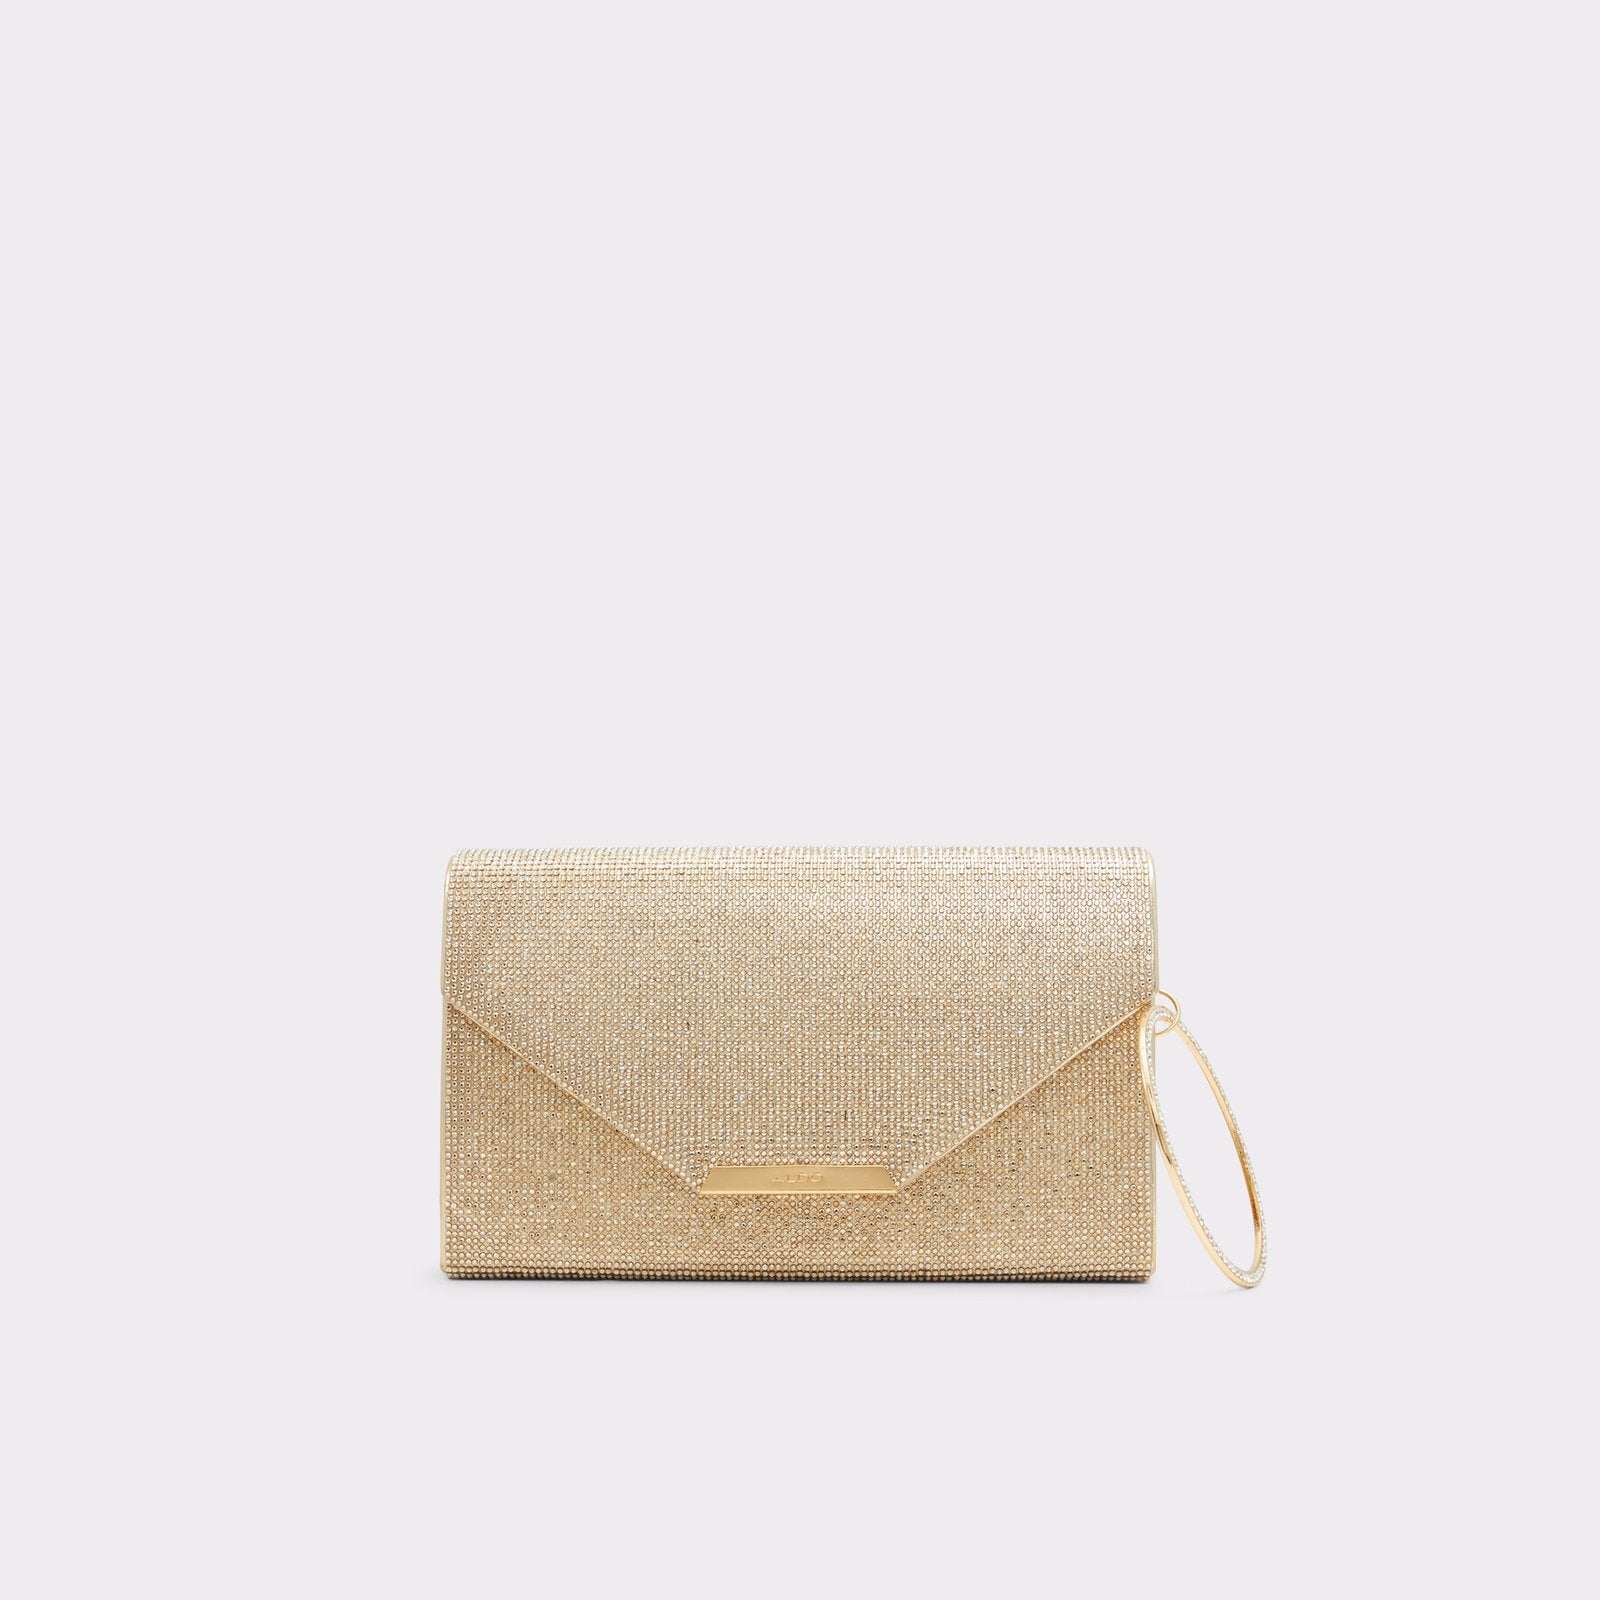 Welter / Clutch Bag Bag - Gold - ALDO KSA